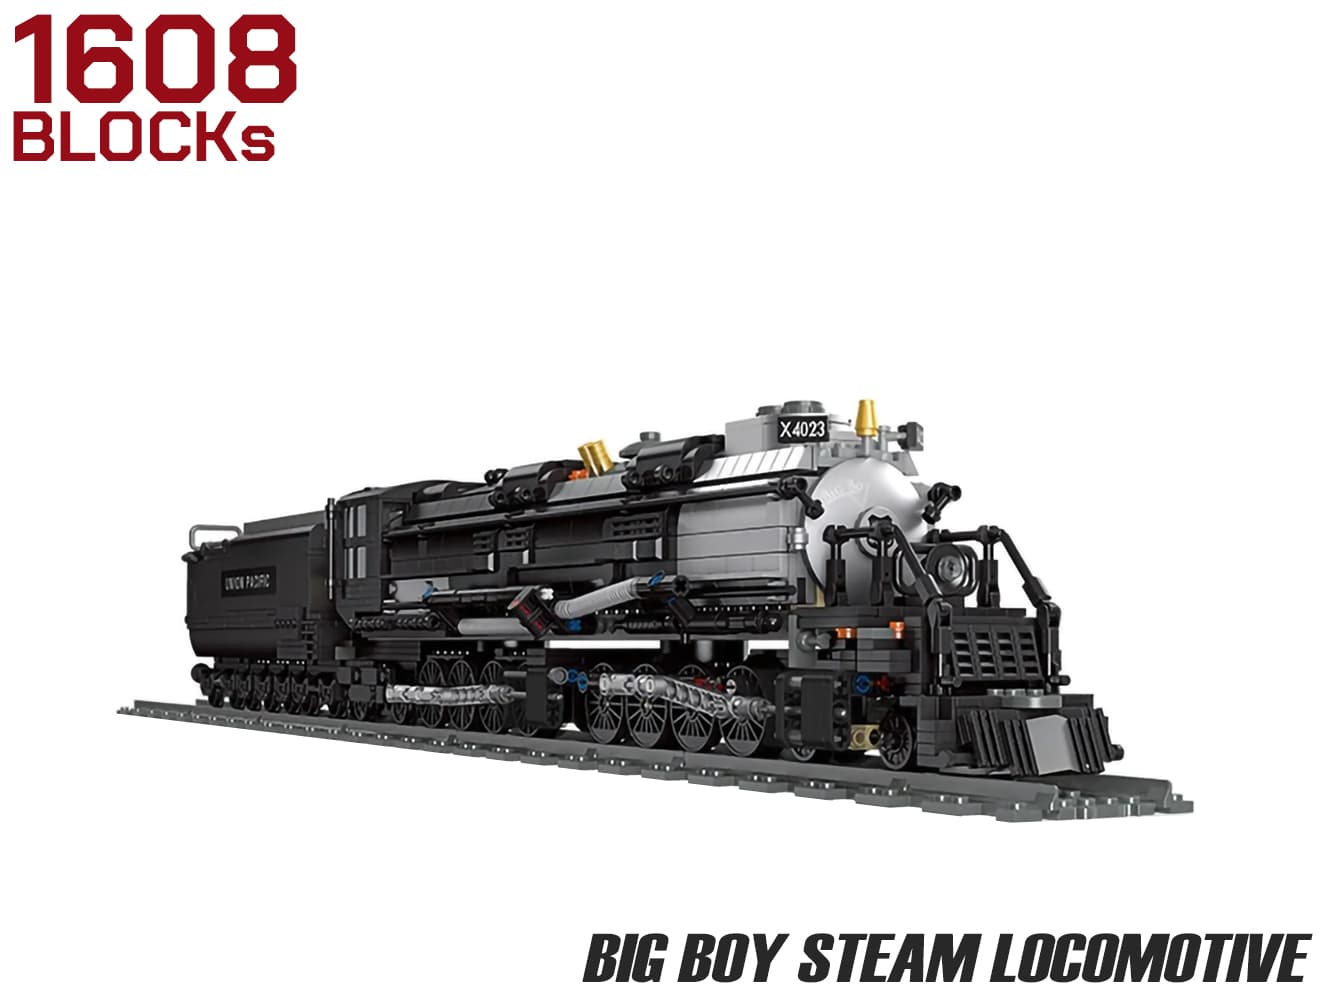 【楽天市場】AFM BIG BOY 蒸気機関車 1608Blocks 世界最大 最強級